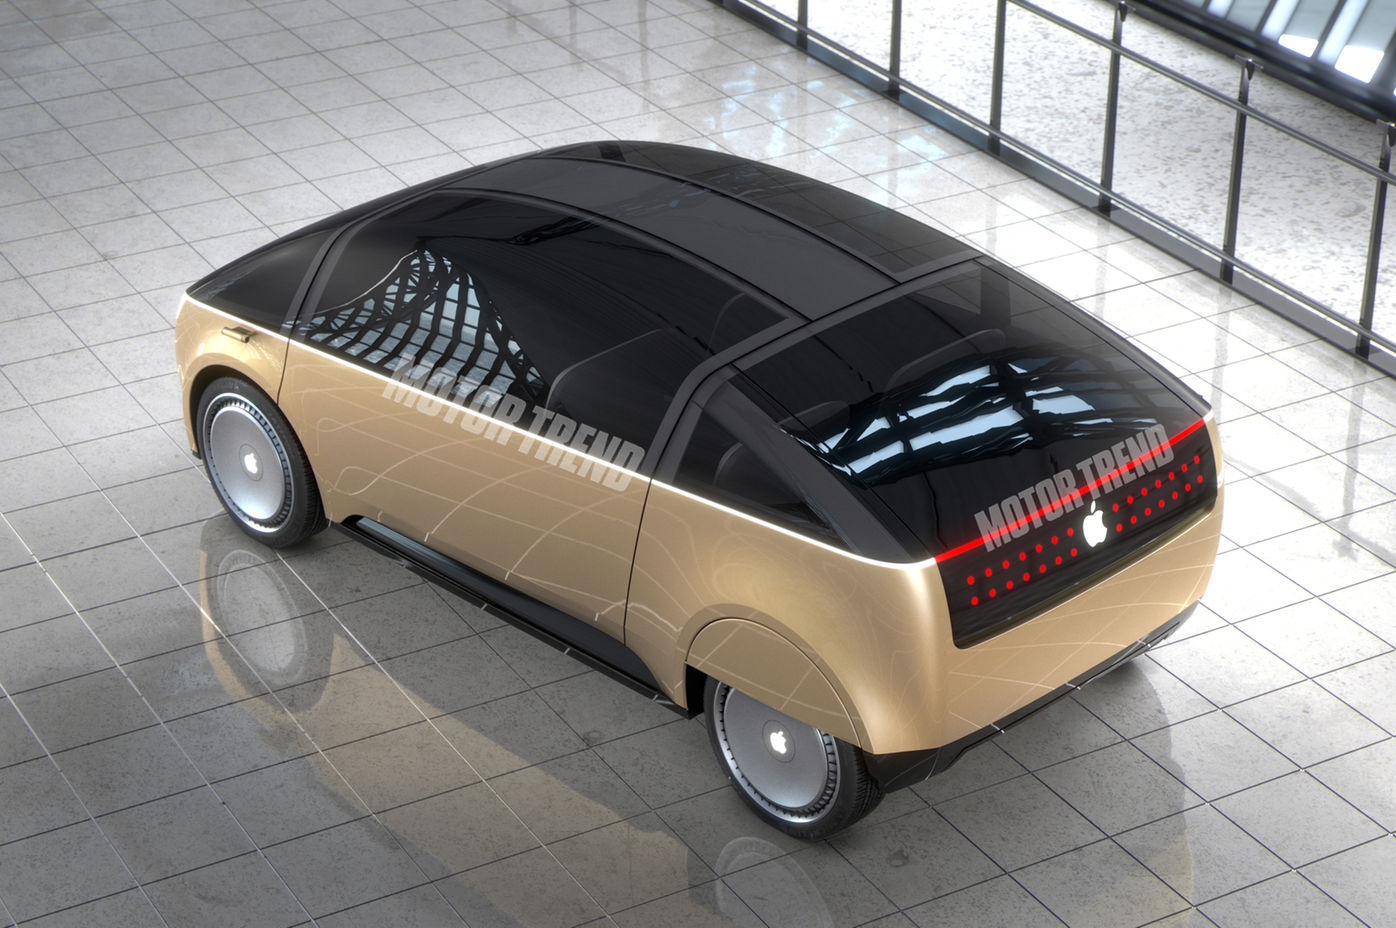 Mockup/render 3D do "Apple Car"